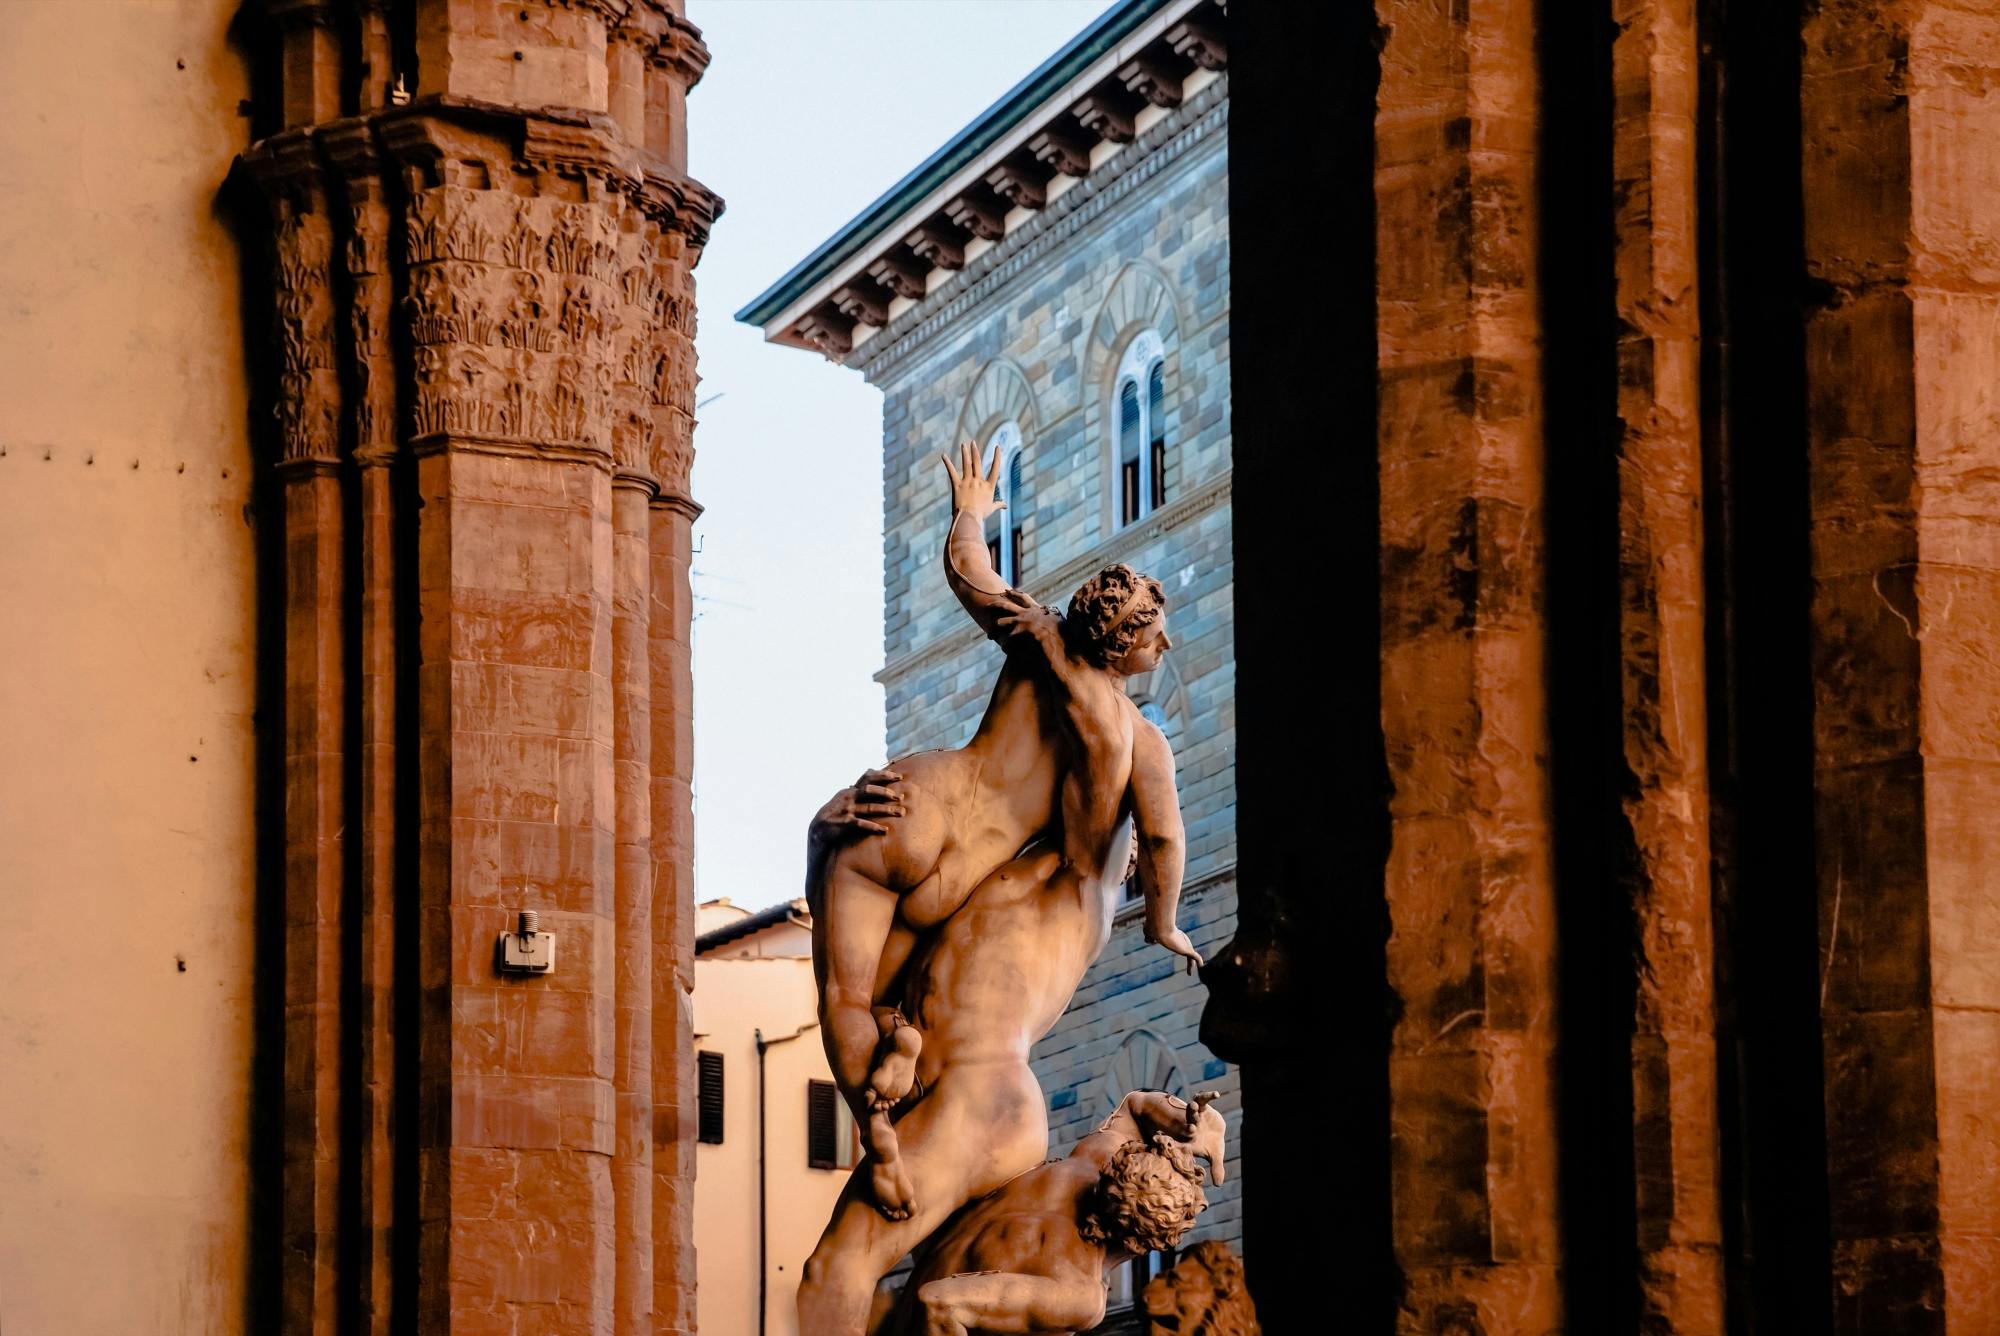 Il meglio di Firenze con Galleria degli Uffizi